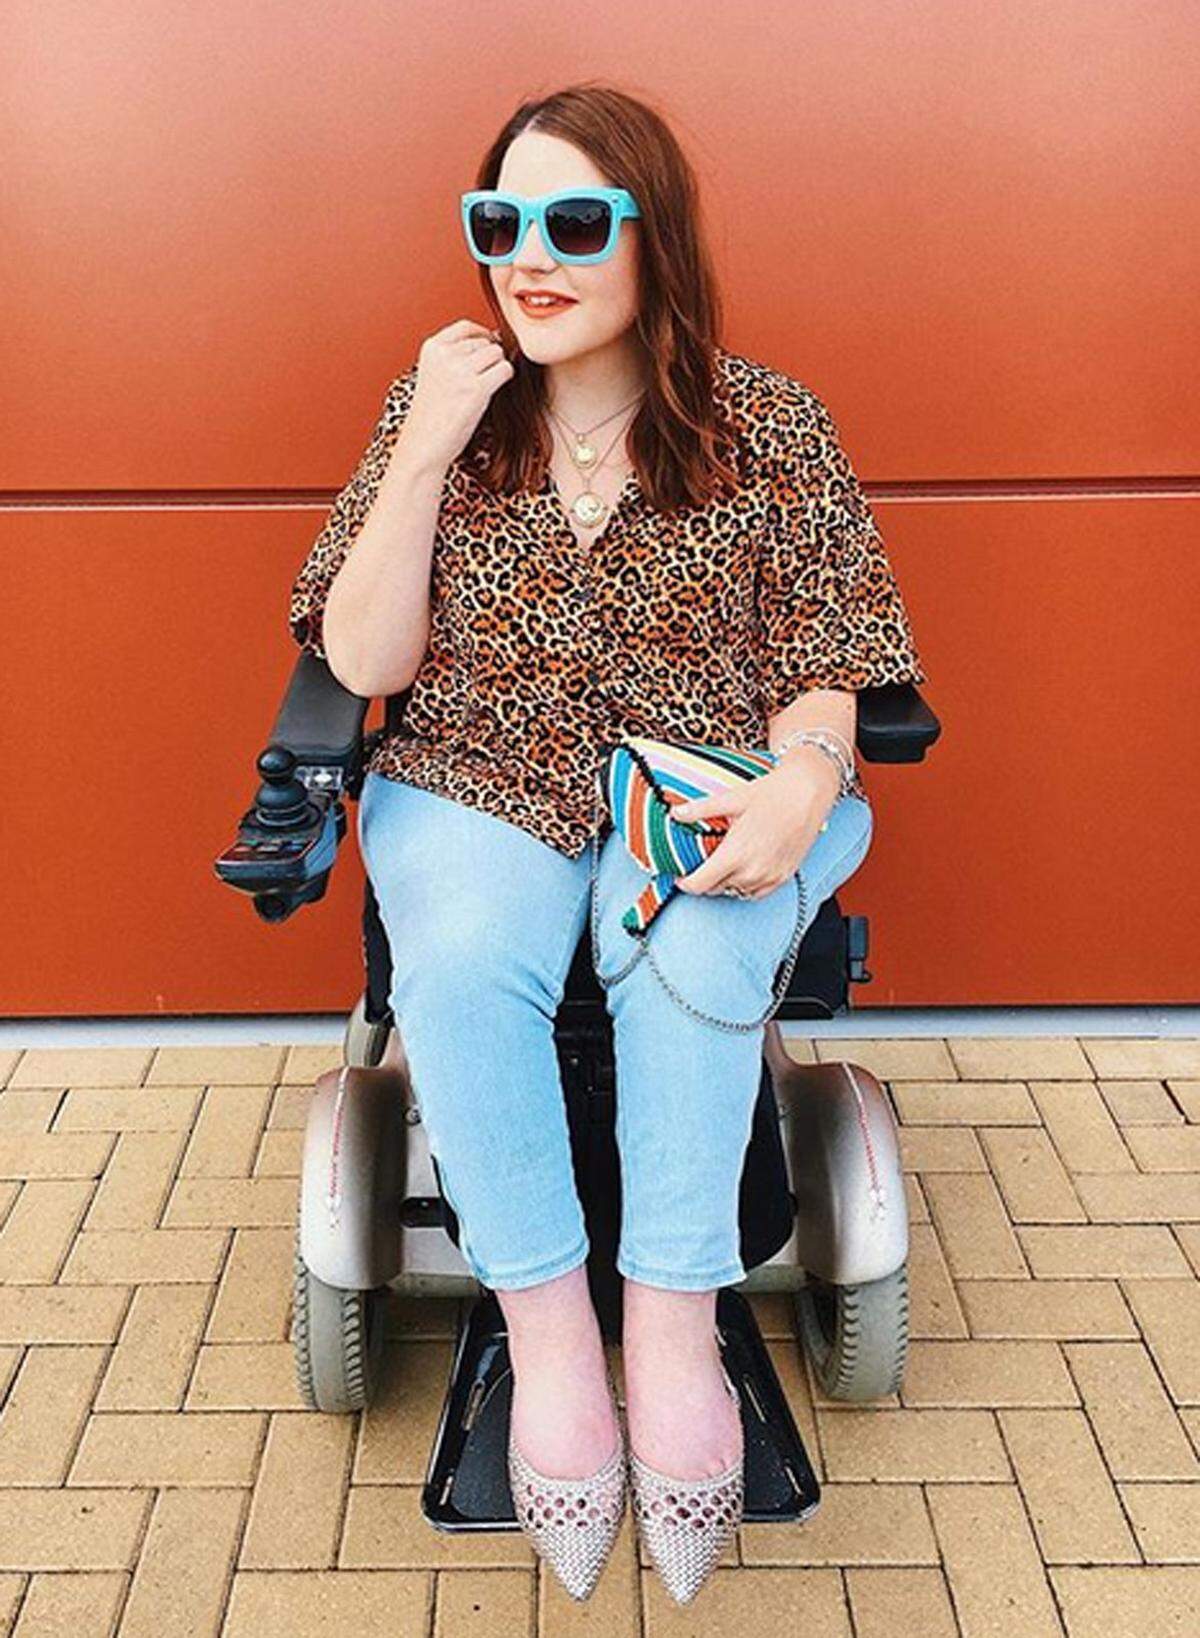 "Ich habe meine Instagram-Account eröffnet, weil ich anderen behinderten Menschen zeigen wollte, dass man im Rollstuhl sitzen kann und trotzdem seinen eigenen Stil haben kann", meint sie im Gespräch mit The Independent.